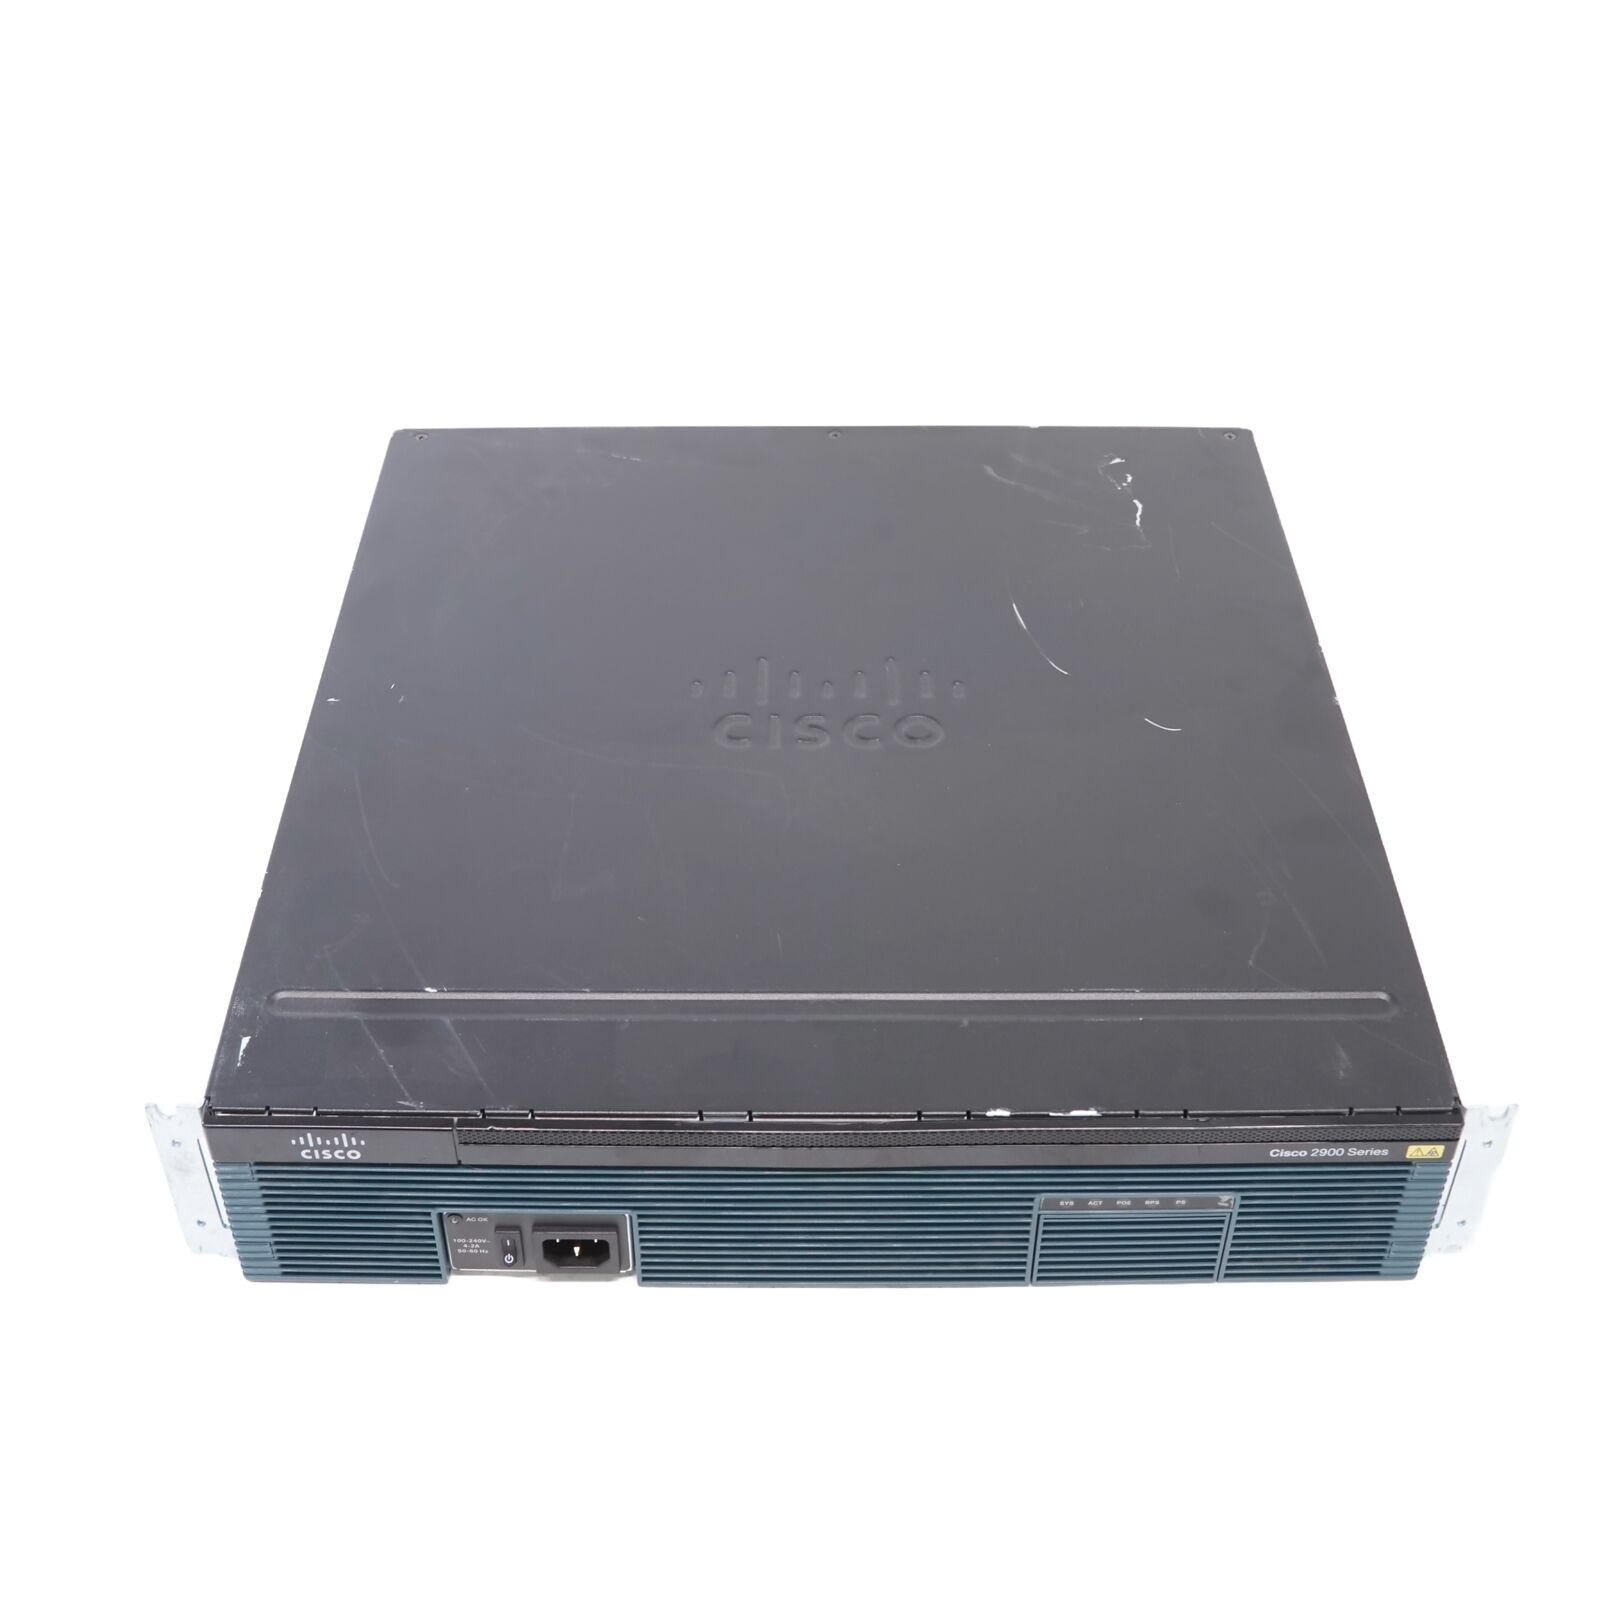 Cisco 2900 Series CISCO2951/K9 v06